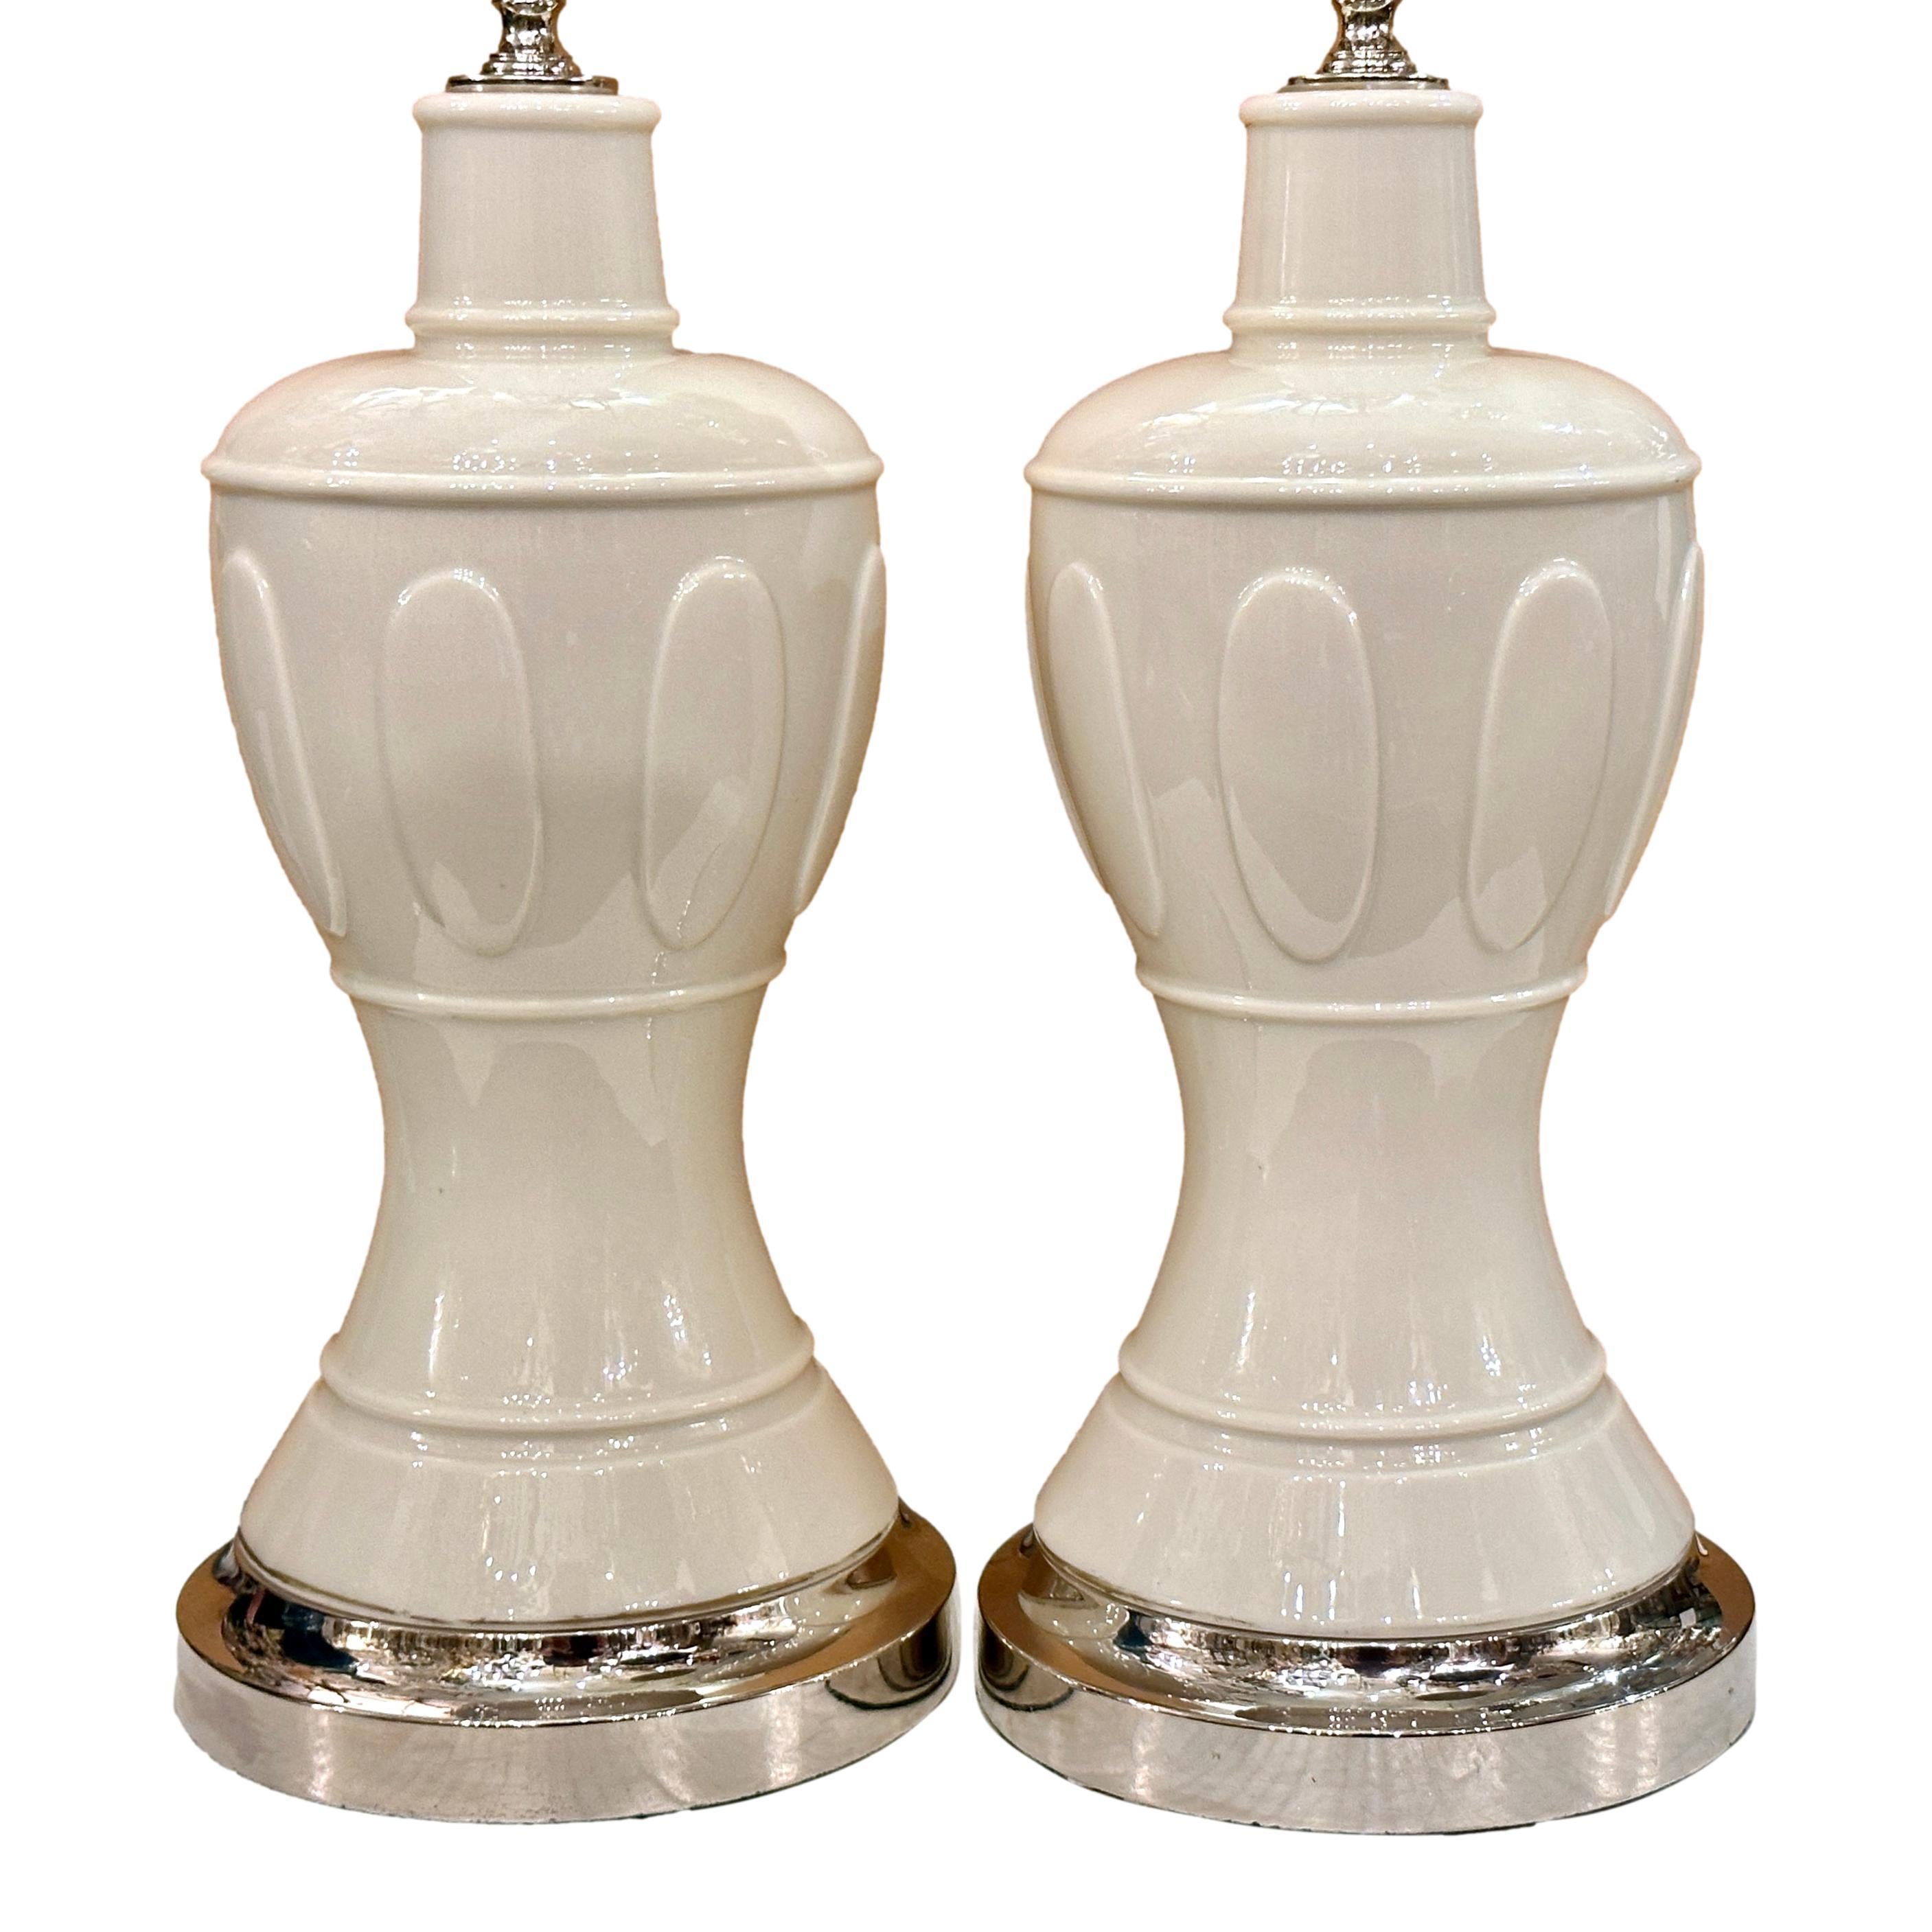 Paire de lampes de table en porcelaine française des années 1950 avec des bases en argent.

Mesures :
Hauteur du corps : 16